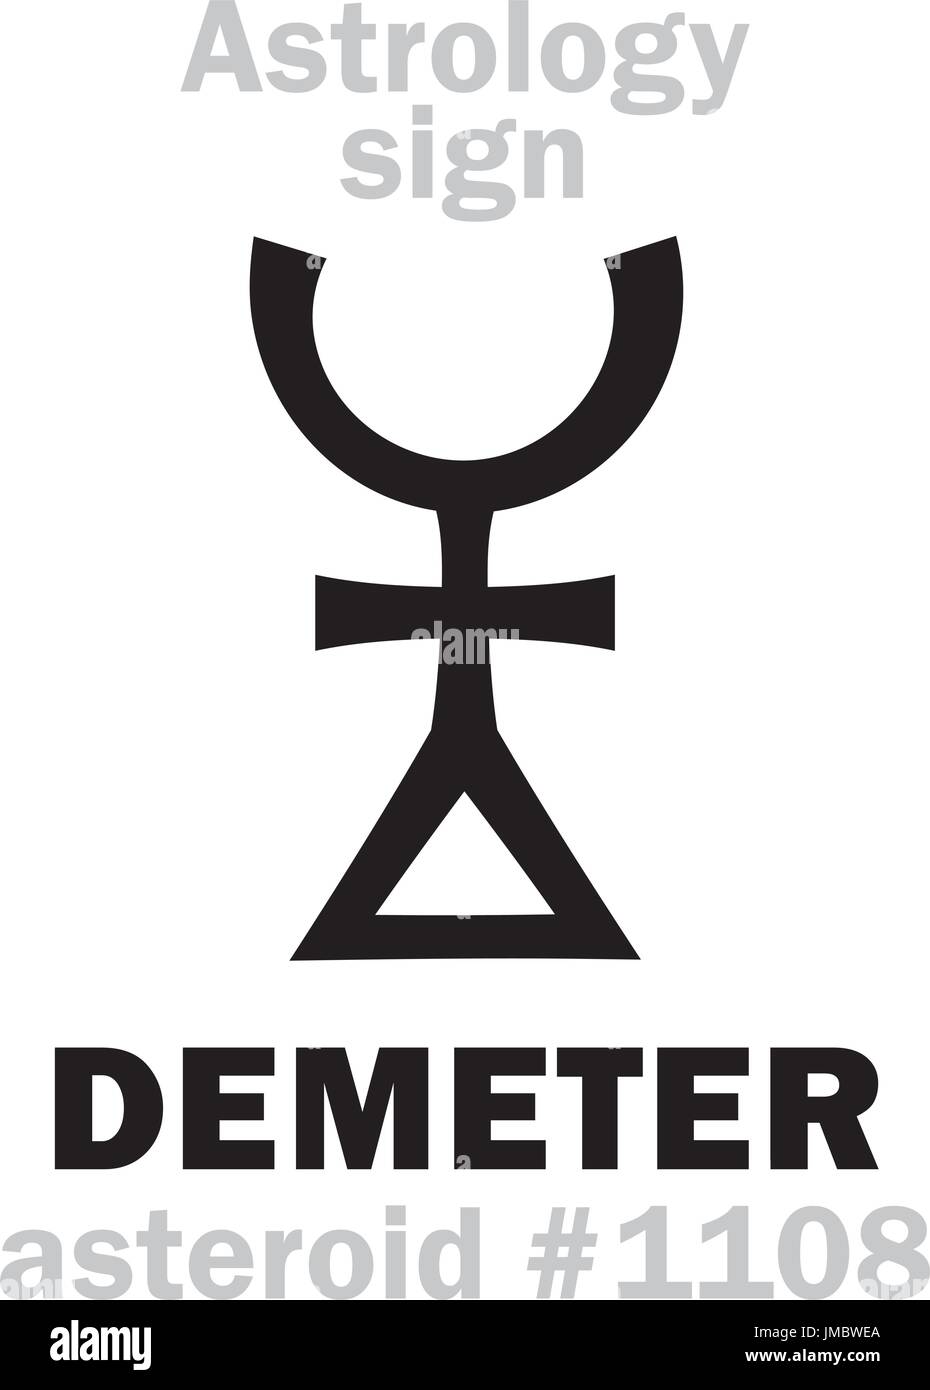 Astrologie-Alphabet: DEMETER, Asteroid #1108. Hieroglyphen Charakter Zeichen (einzelnes Symbol). Stock Vektor